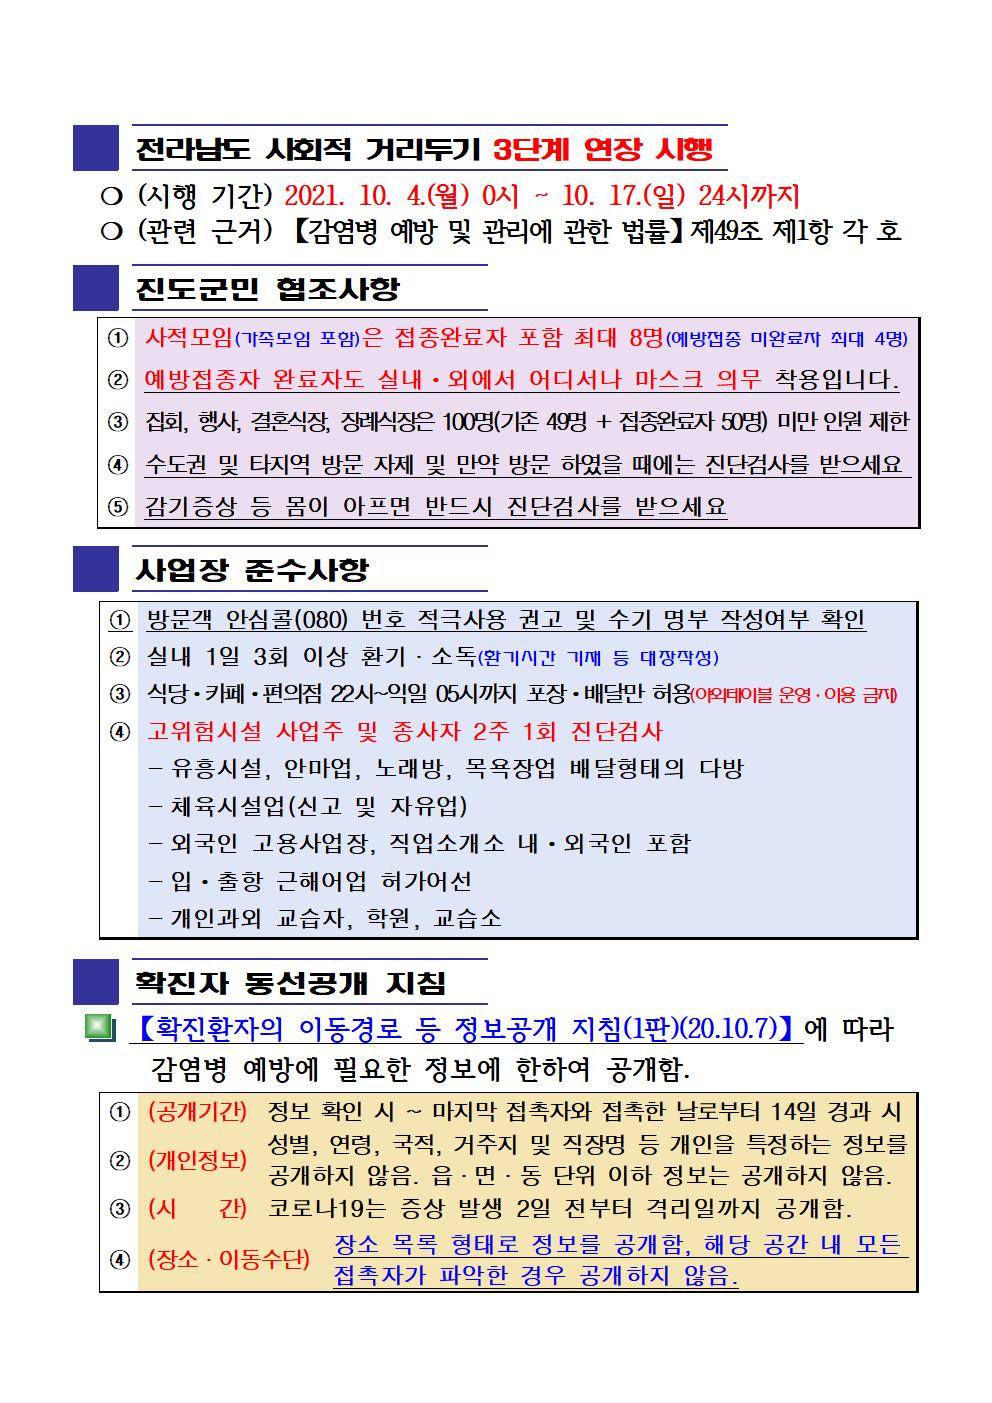 2021년 코로나19 대응 일일상황보고(10월 14일 24시 기준) 첨부#2